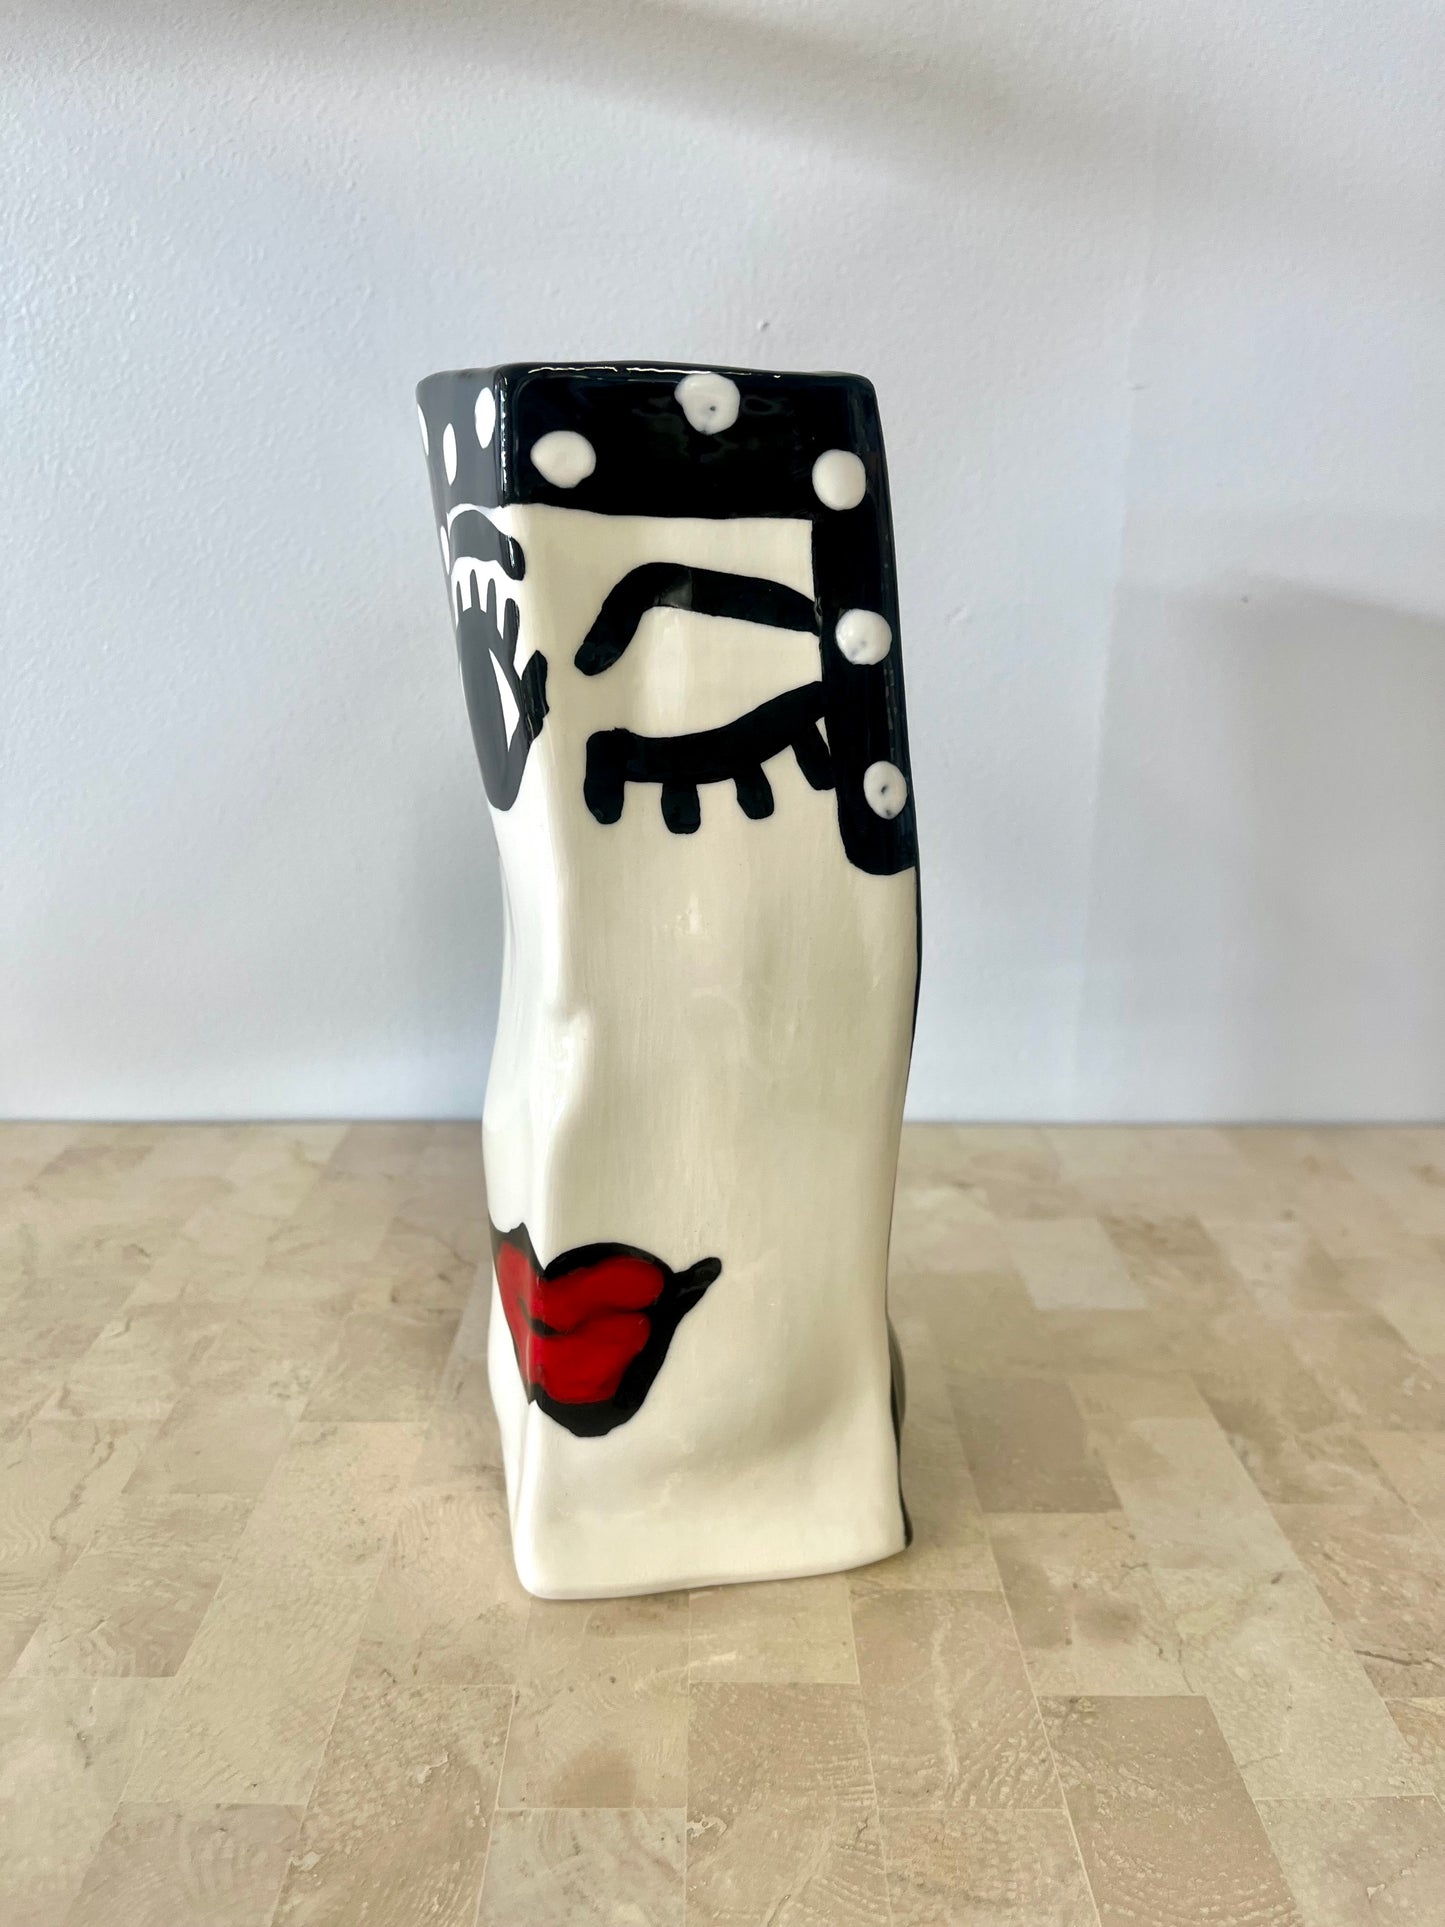 Vintage Jarilynn Babroff Whimsical Ceramic Winking Face Vase